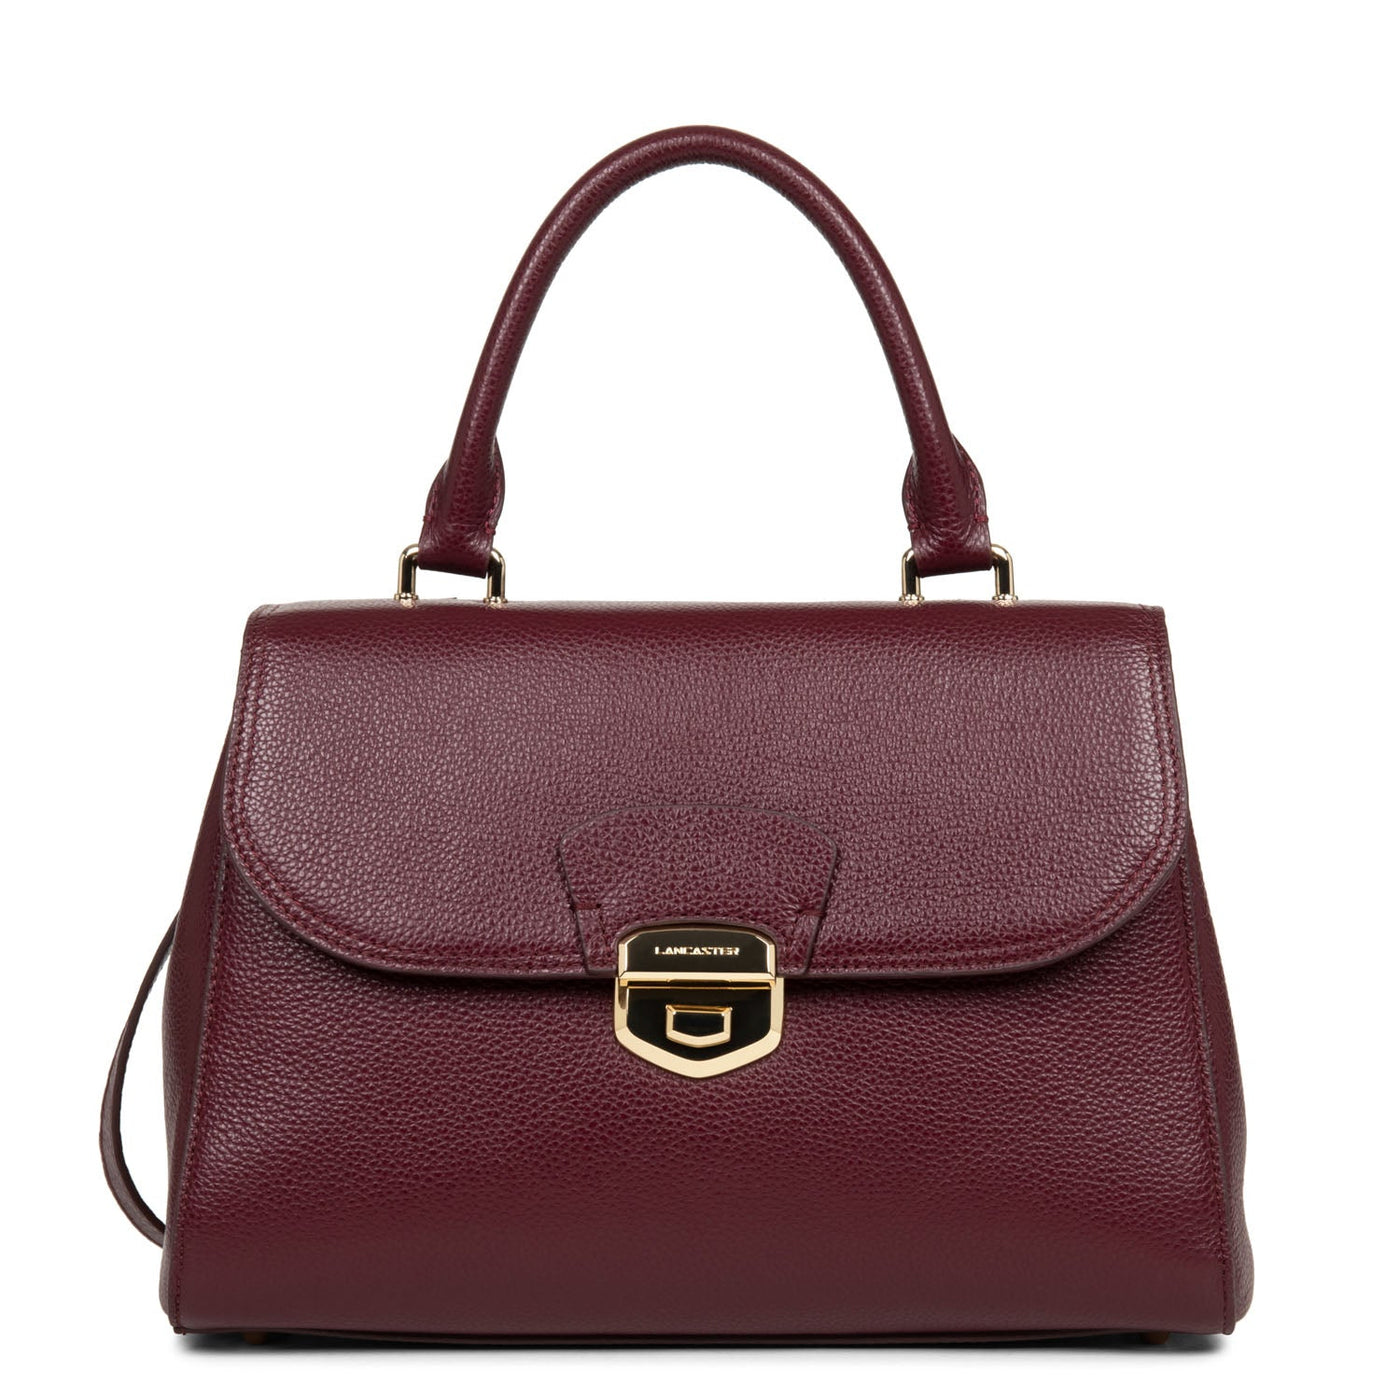 handbag - foulonne milano #couleur_pourpre